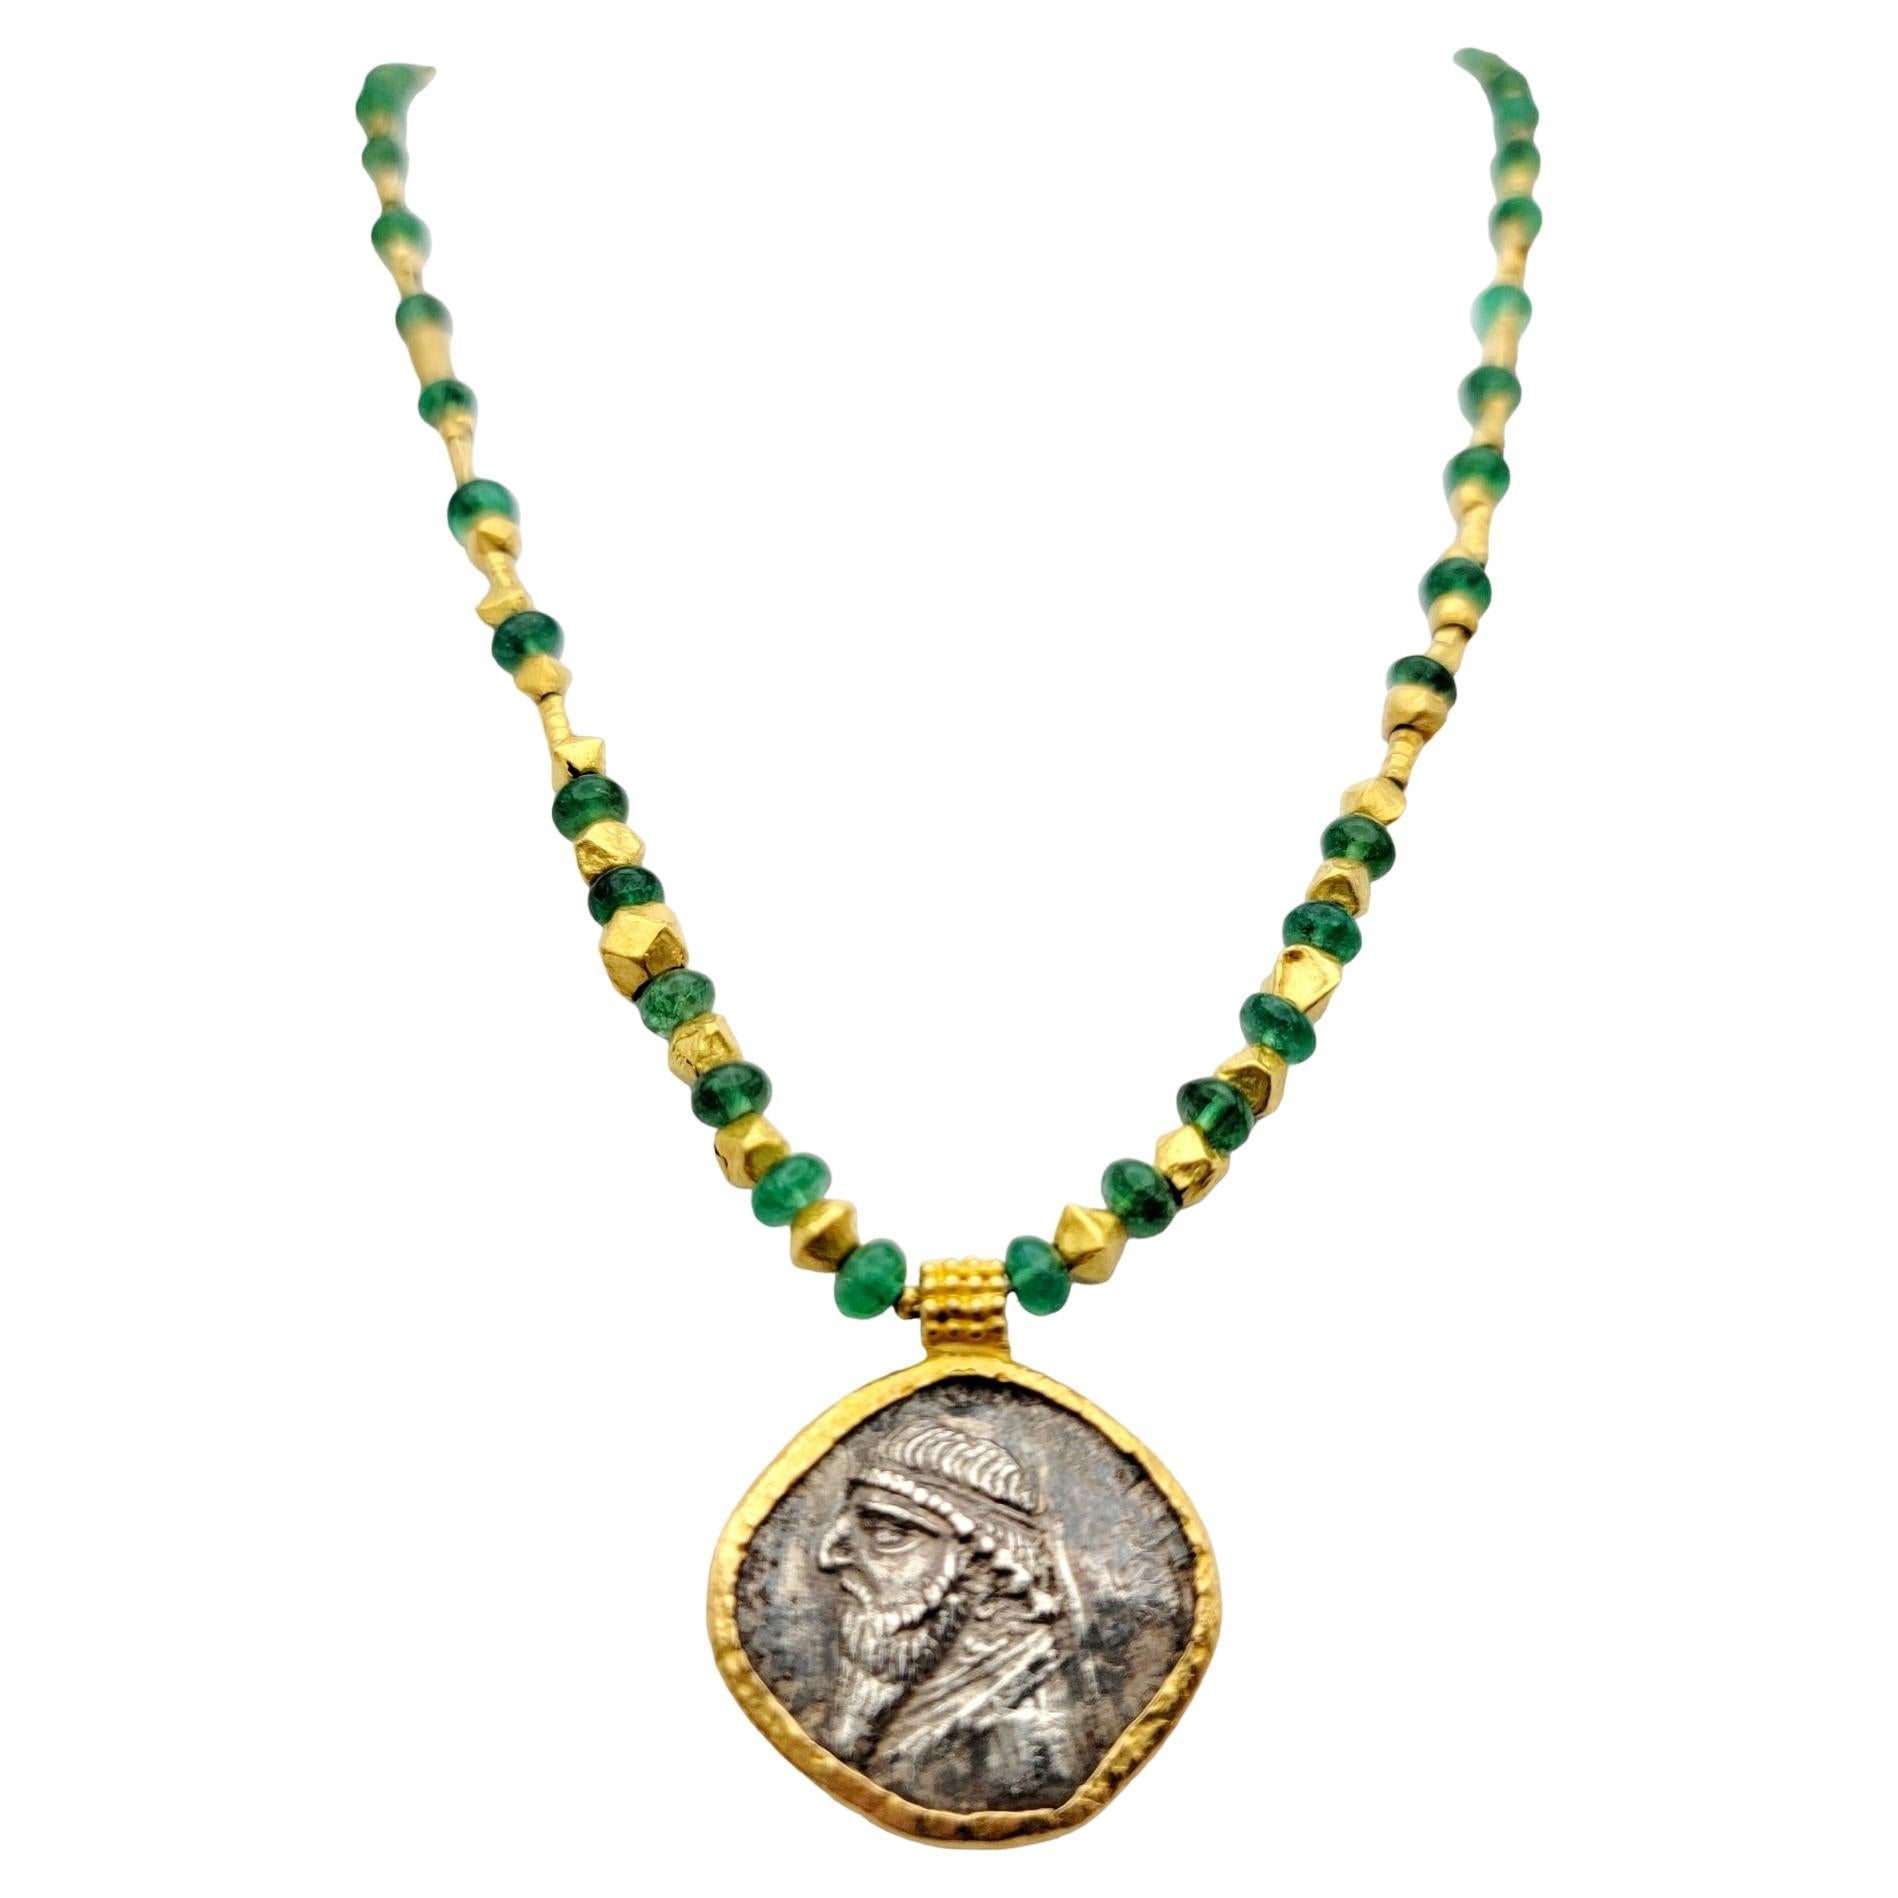 Tetradrachm of Mithridates II, pendentif pièce de monnaie en argent et collier d'émeraude 22 carats